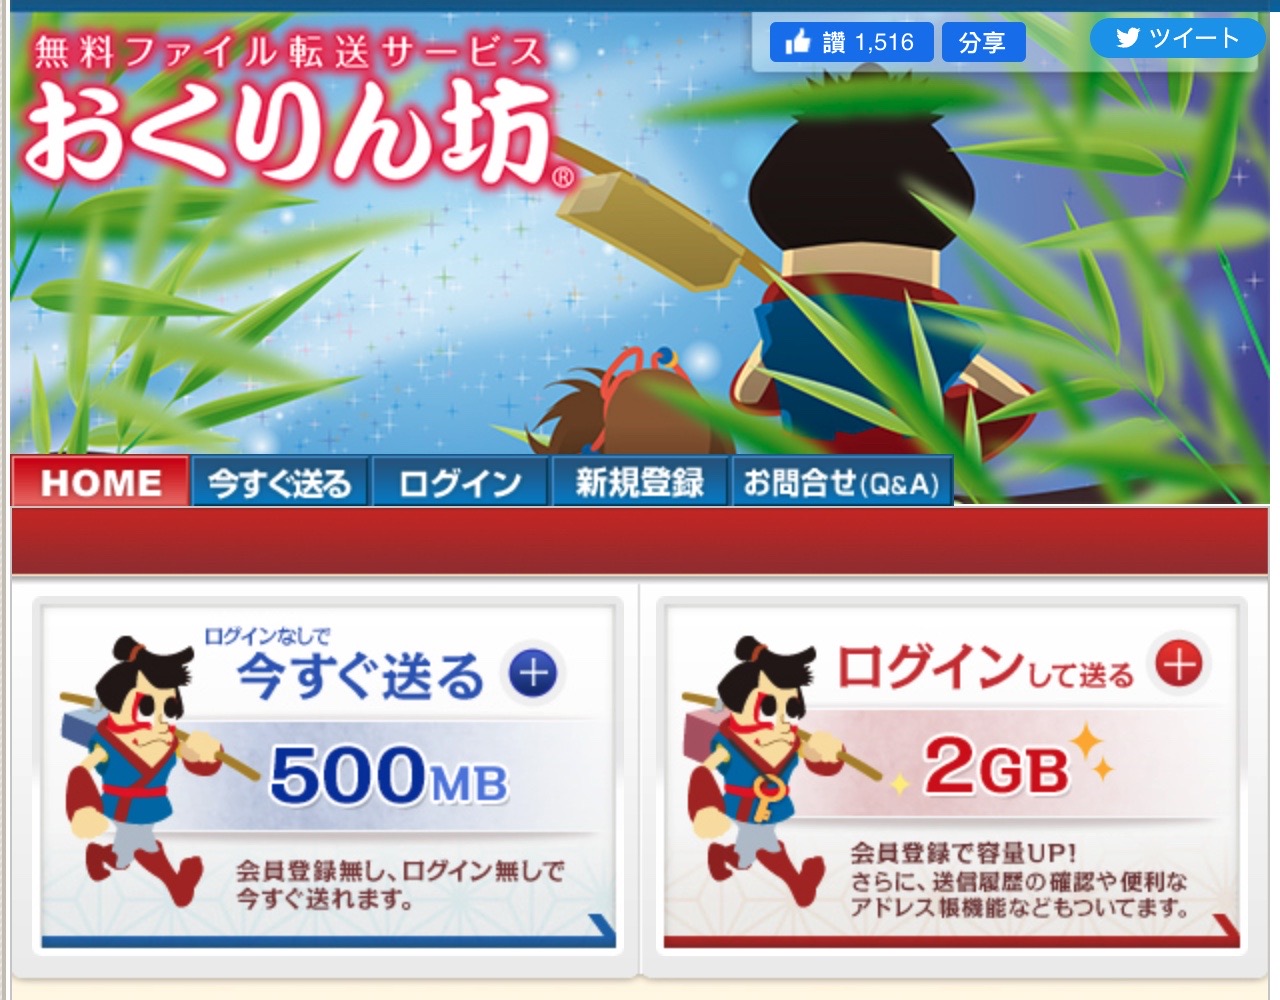 Okurin 日本免費空間服務，免註冊上傳最多 500 MB 可保存七天